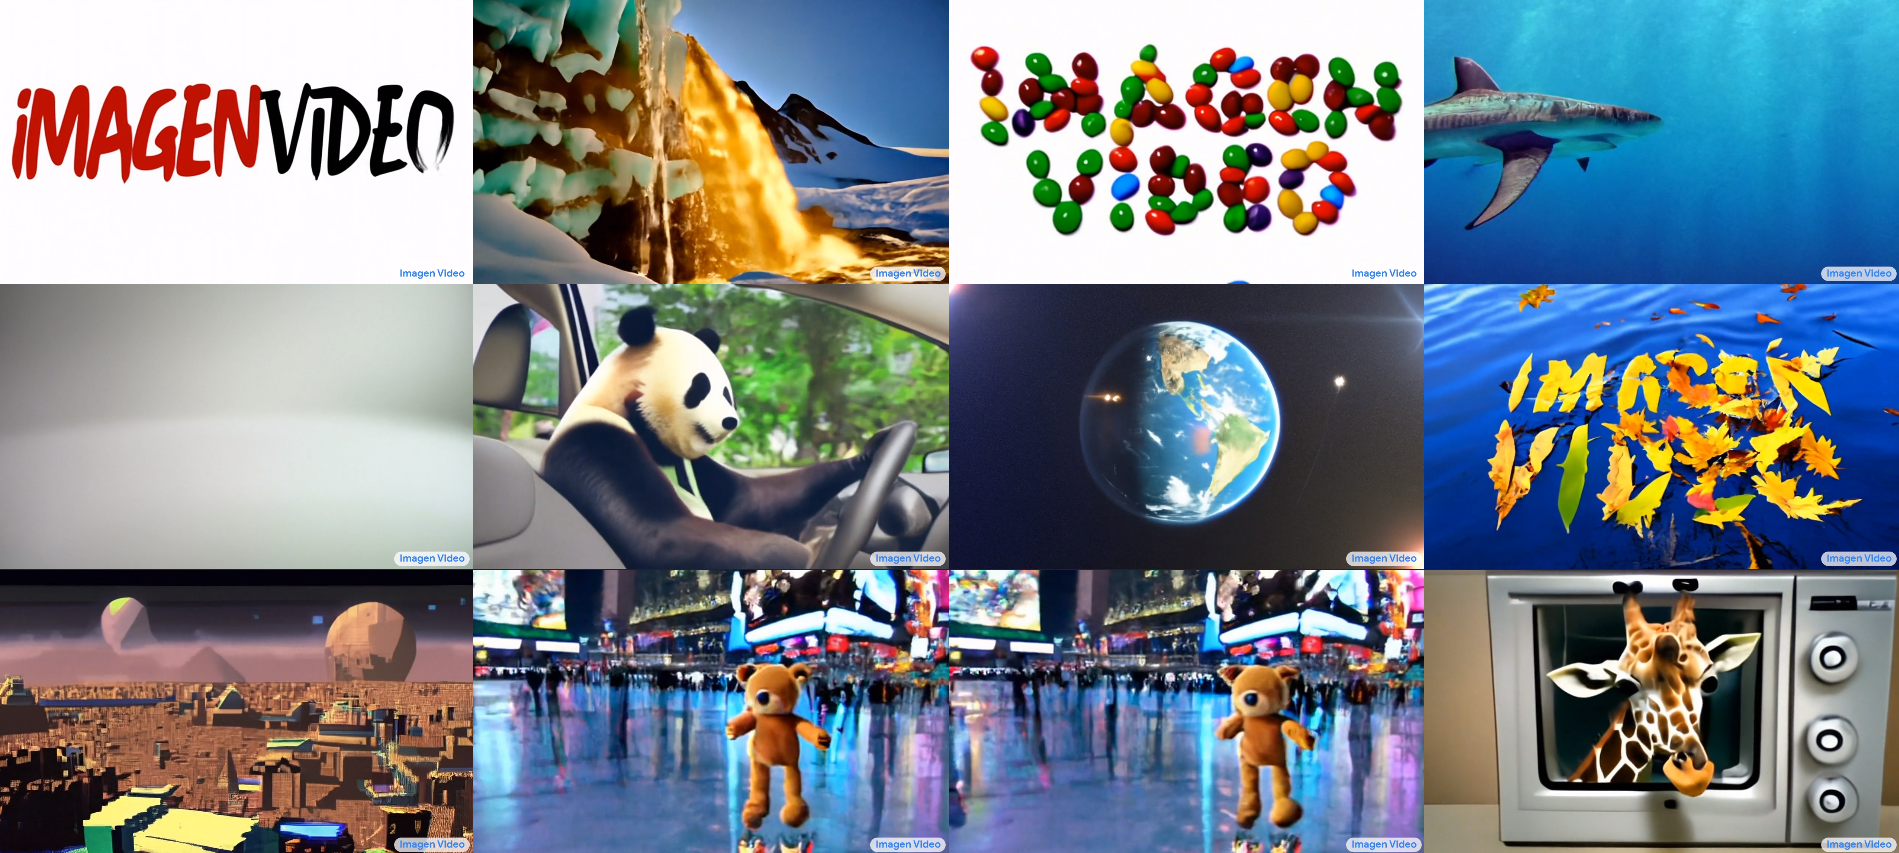 Google ha desarrollado la red neuronal Imagen Video, que crea vídeos a partir de descripciones de texto